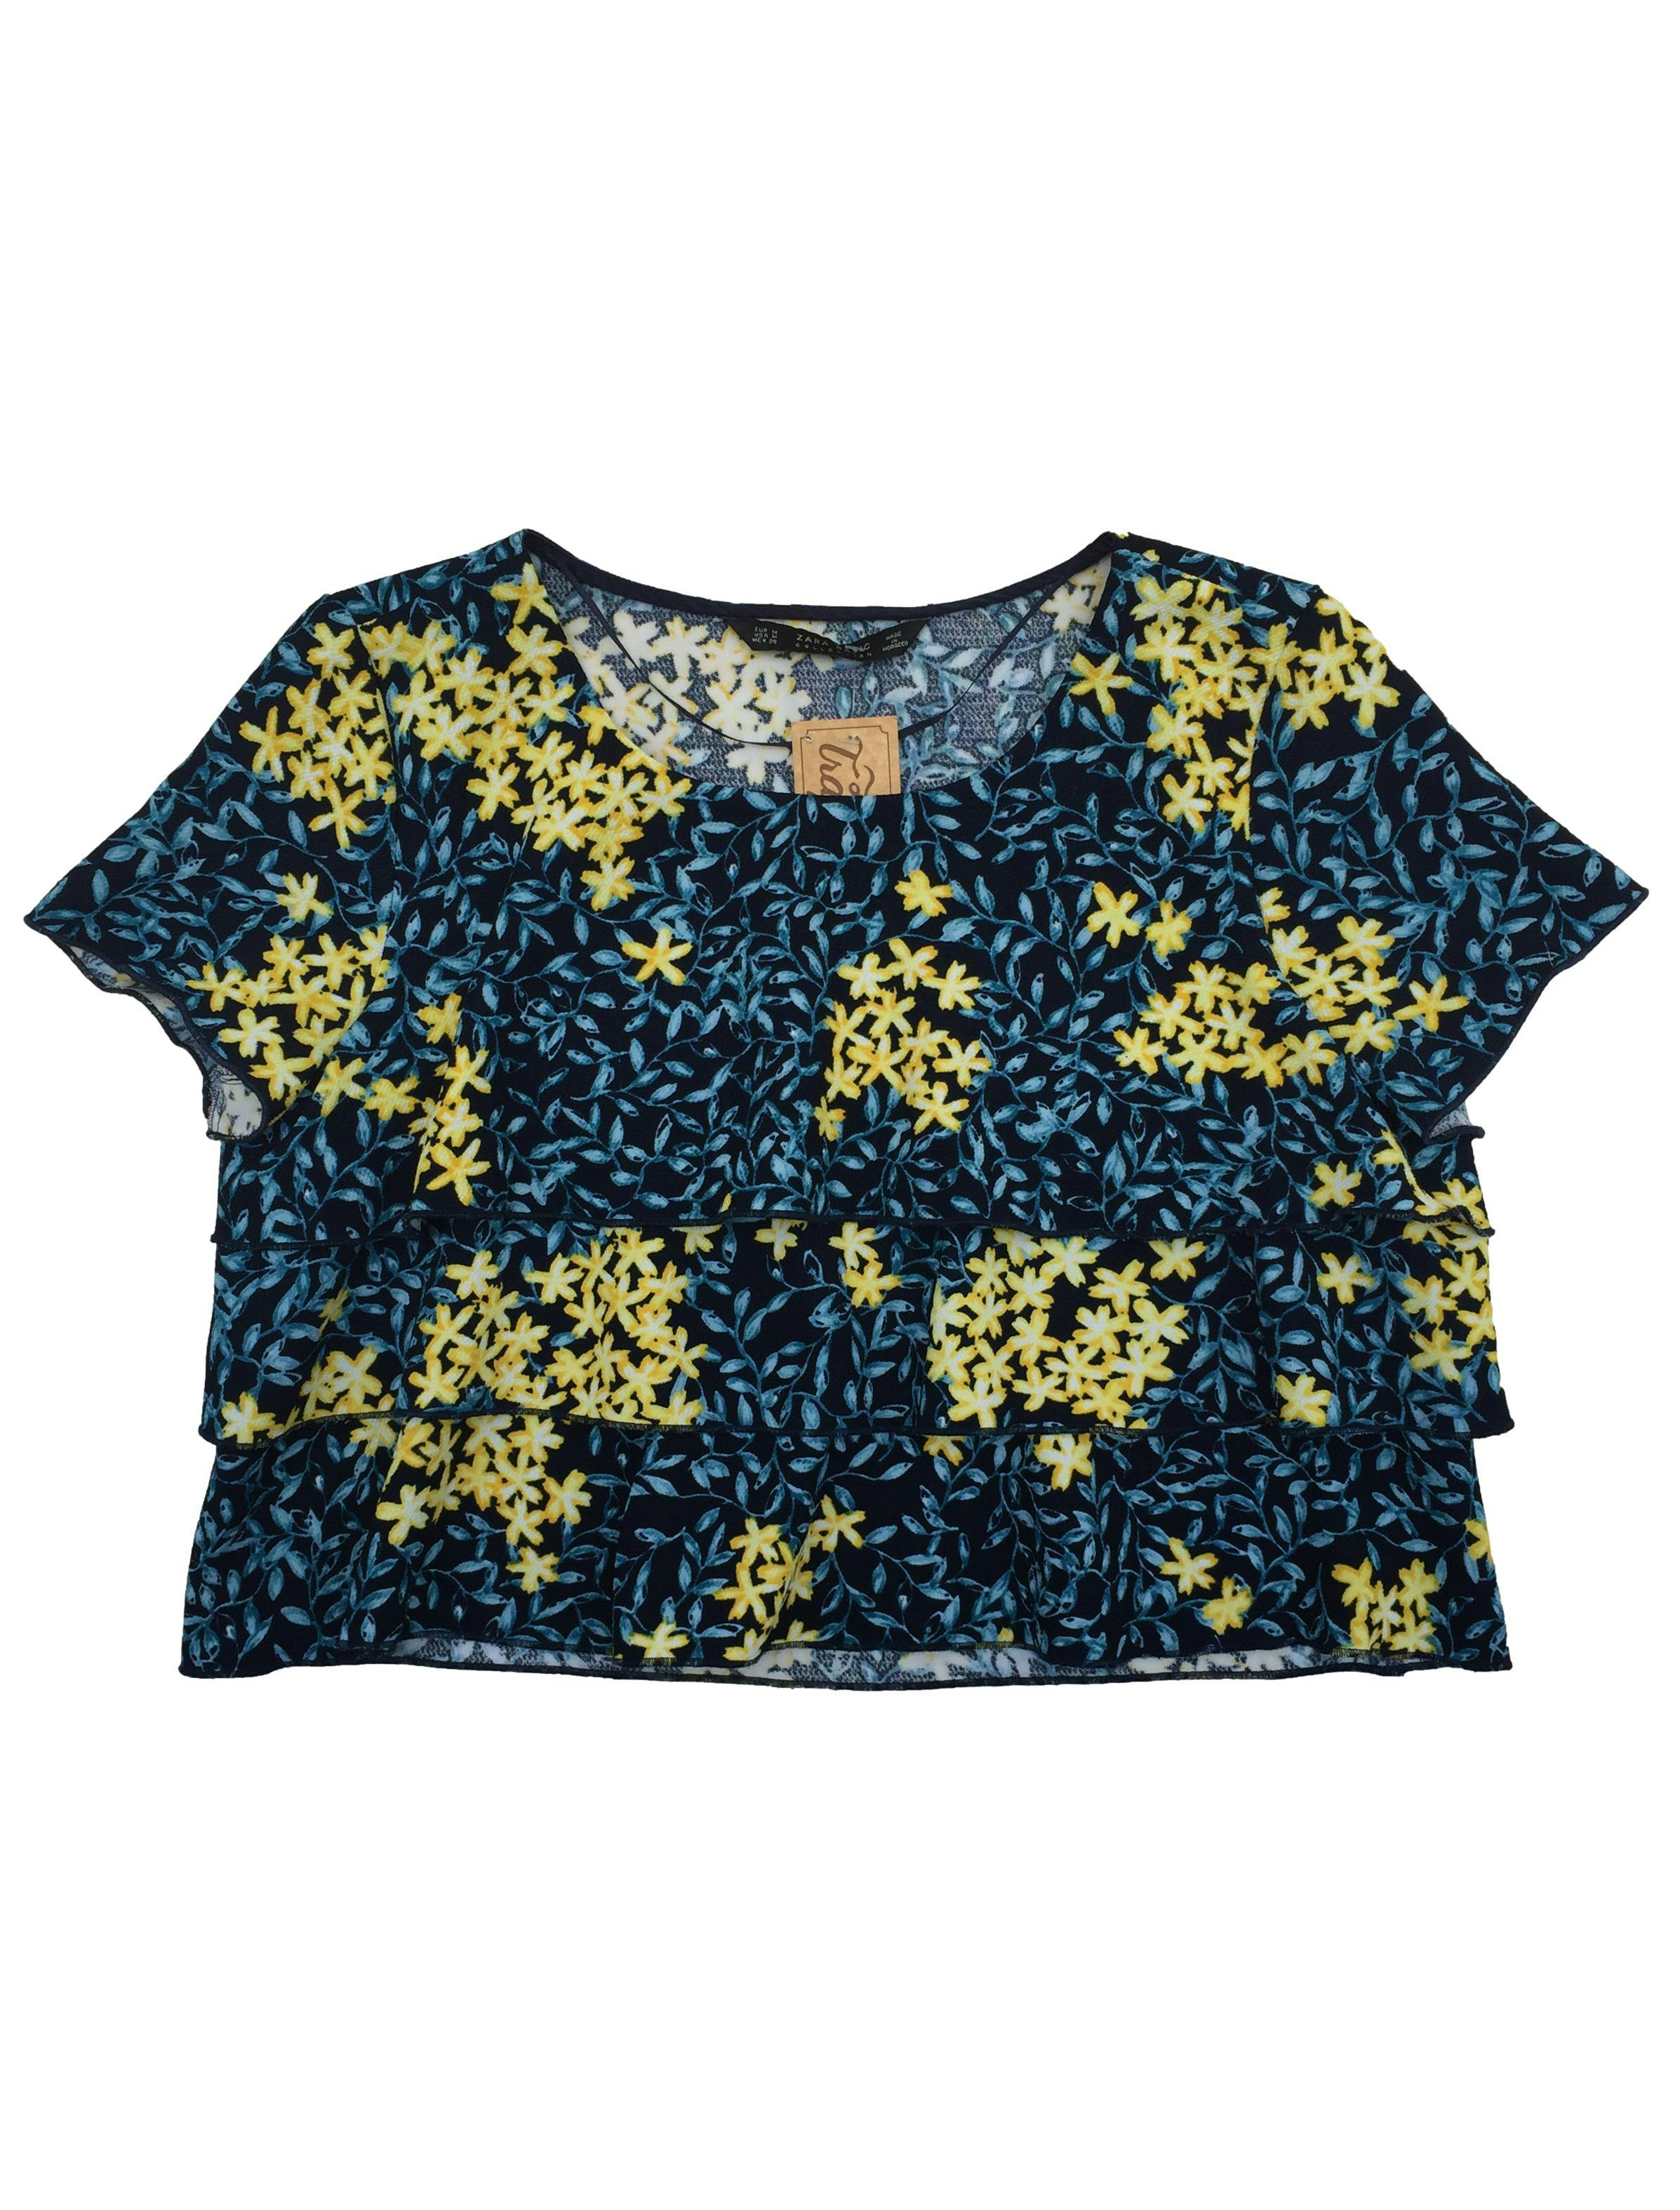 Blusa Zara azul con flores celestes y amarillas, tela gruesa en capas. Busto: 95cm, Largo: 42cm.